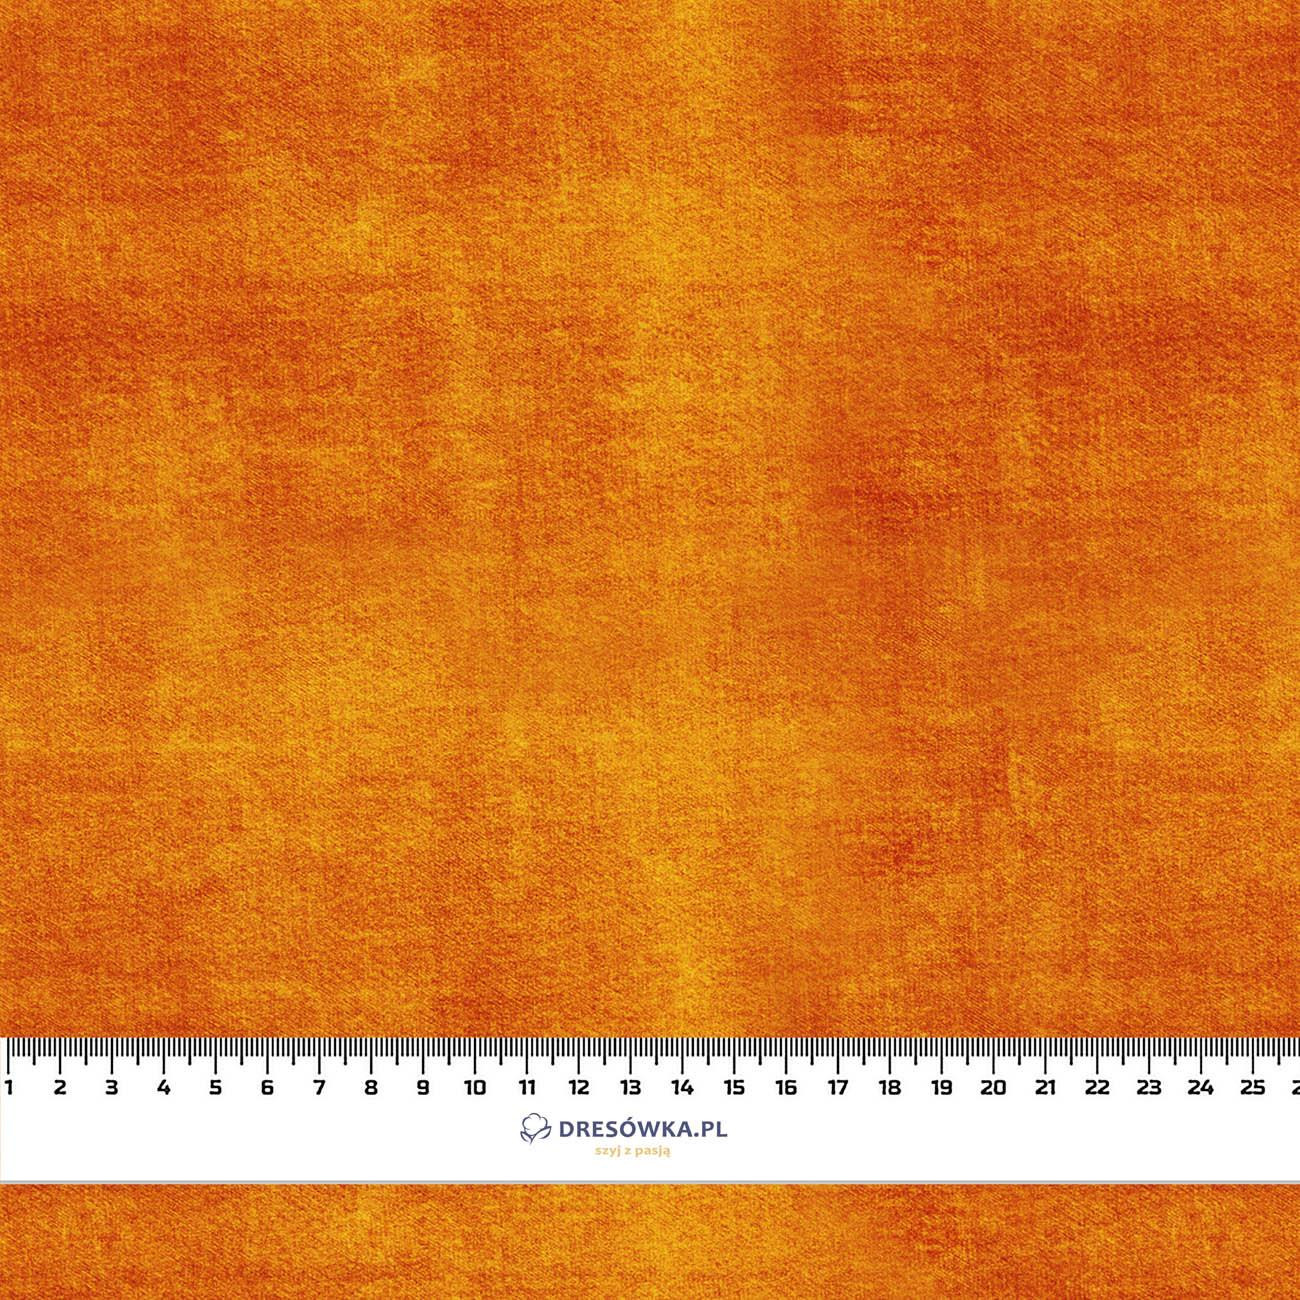 AUTUMN JEANS / orange (AUTUMN COLORS) - softshell